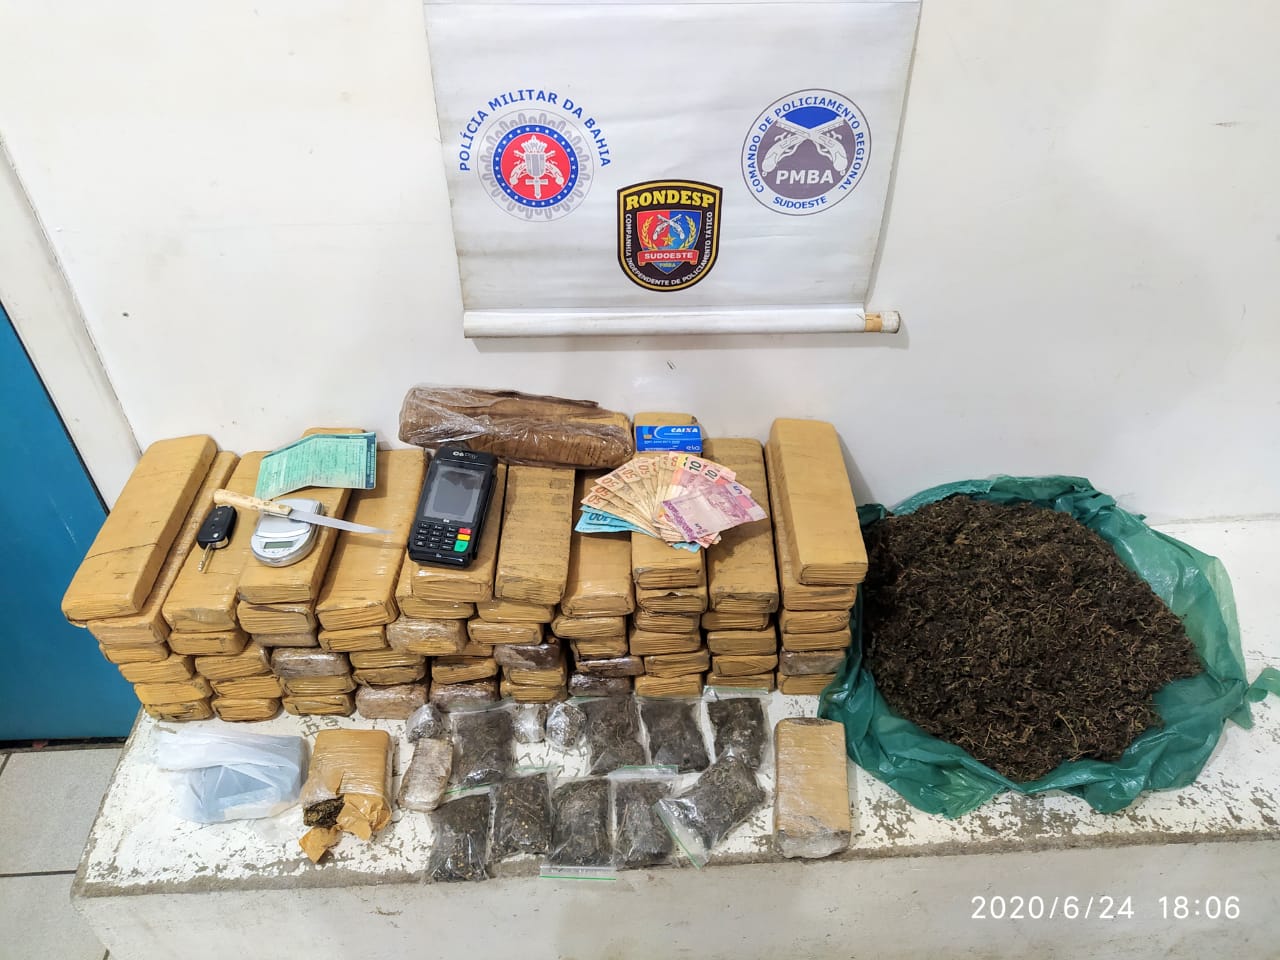 Urgente em Conquista: Rondesp realiza grande apreensão de drogas em operação nesta quarta-feira